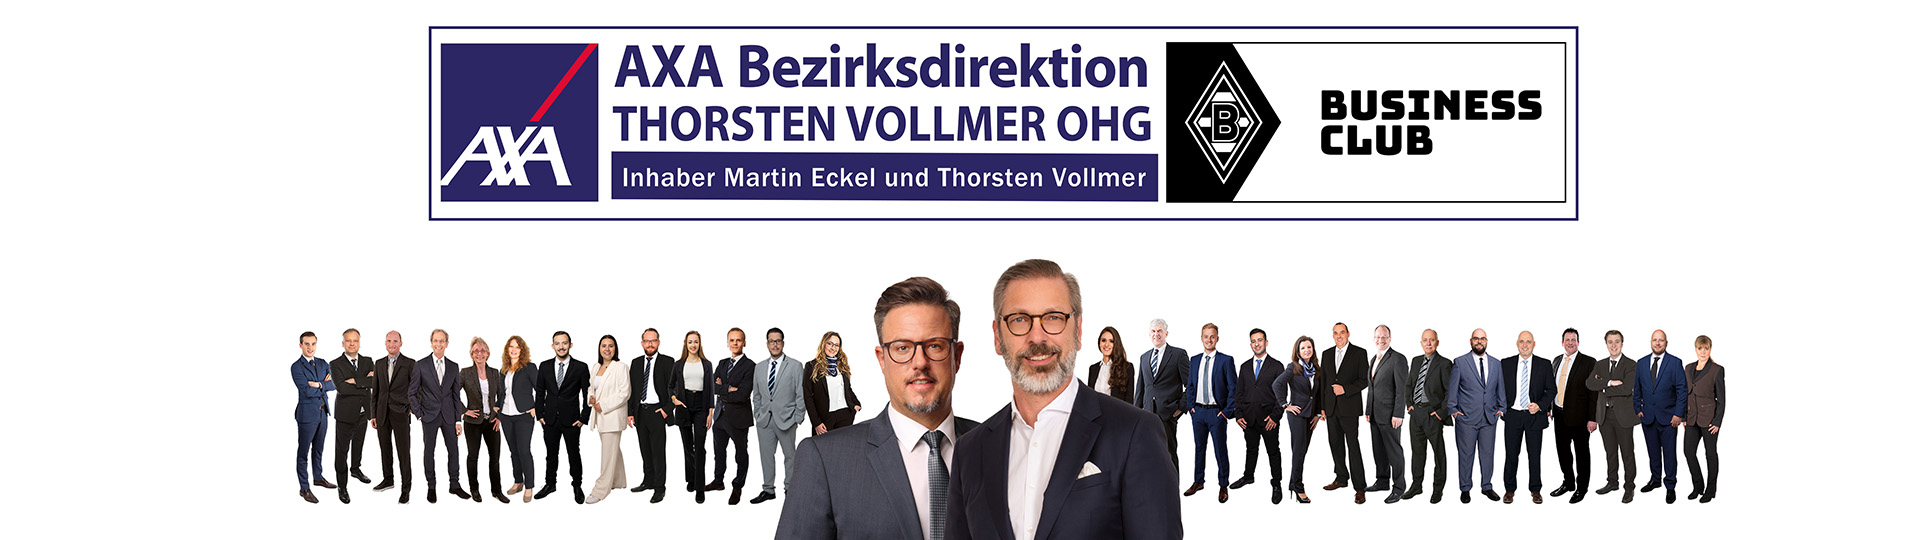 AXA Bezirksdirektion in Schwalmtal Thorsten Vollmer OHG aus Schwalmtal